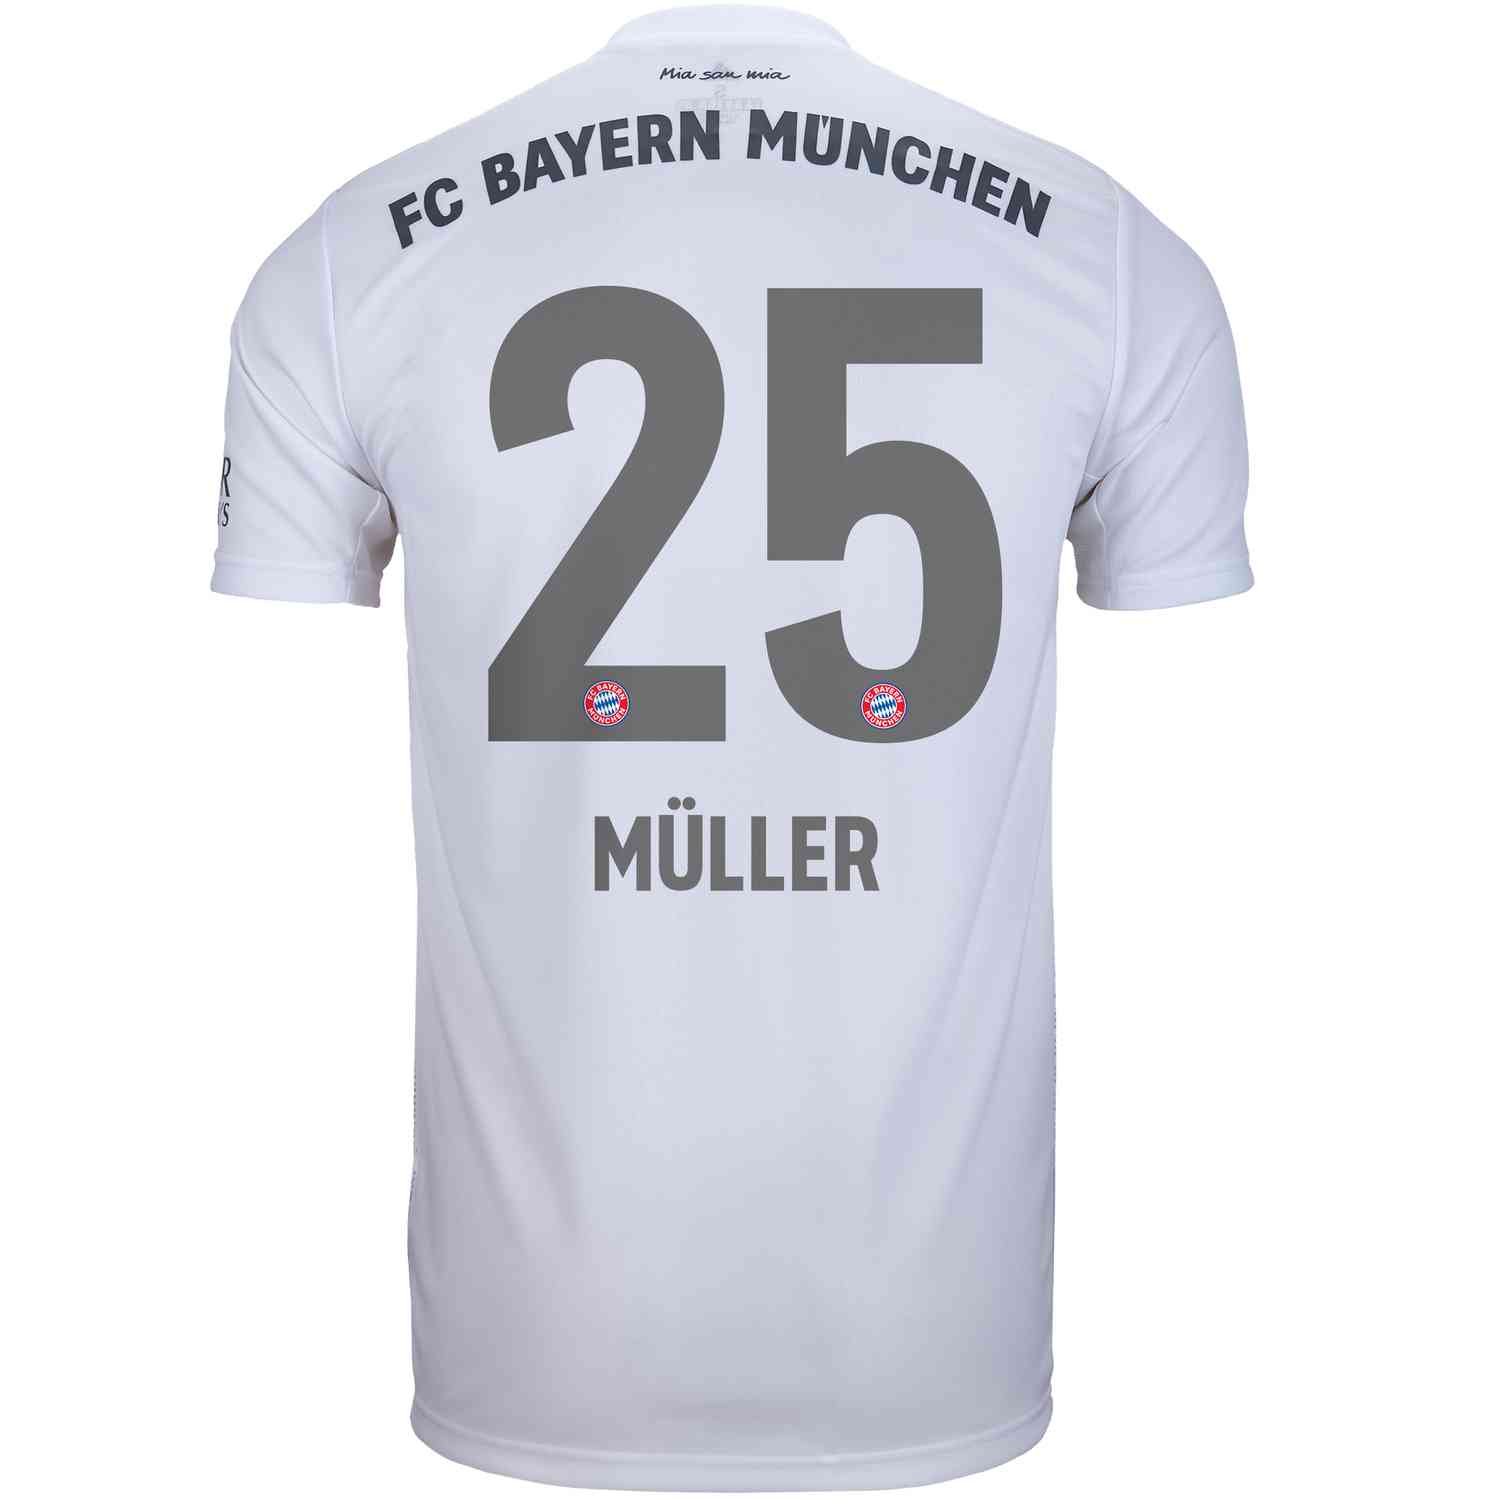 bayern munich away jersey 2019